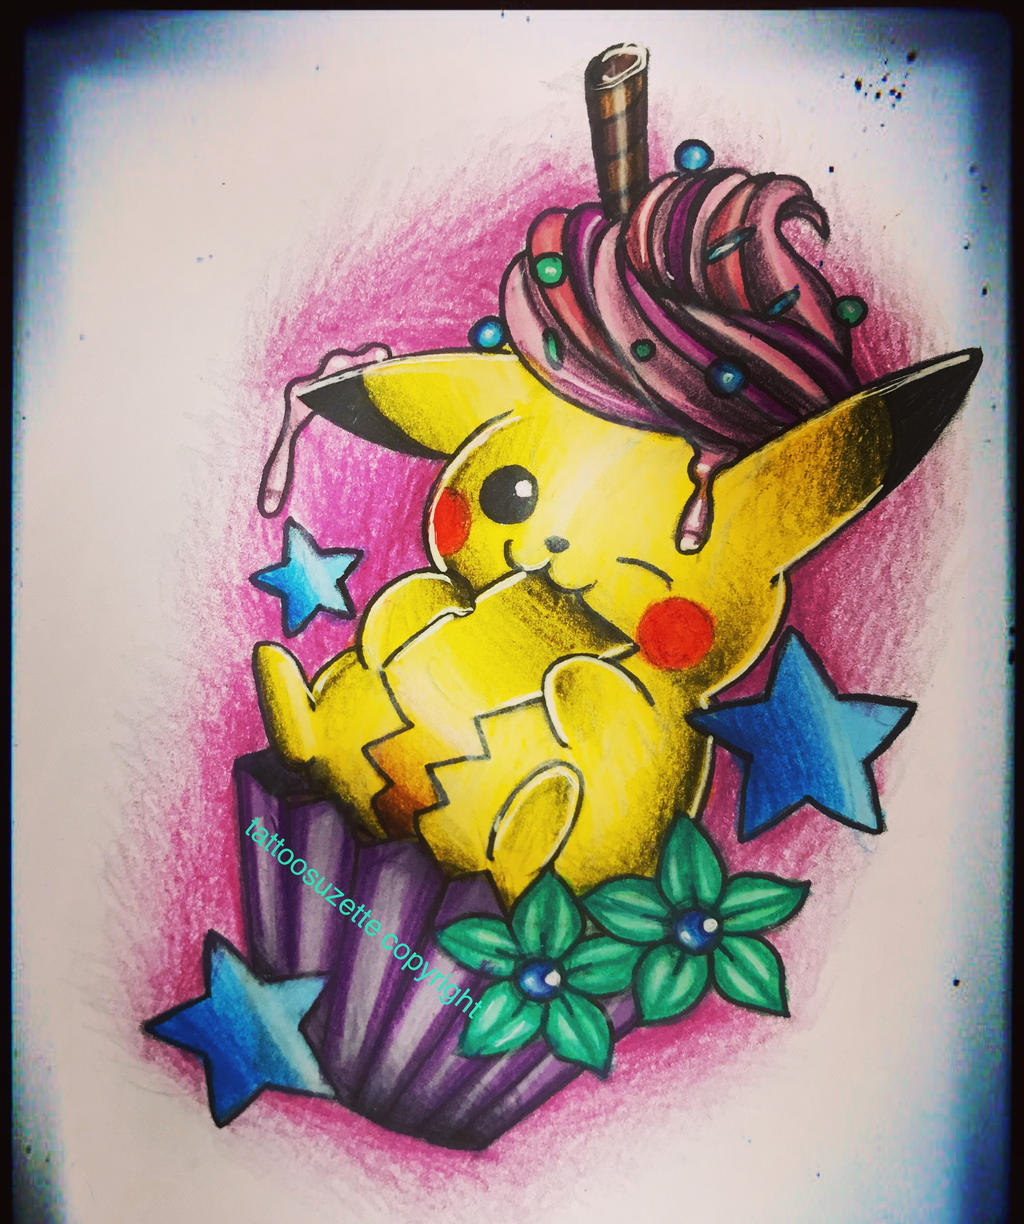 Tatouage pikachu by tattoosuzette on DeviantArt